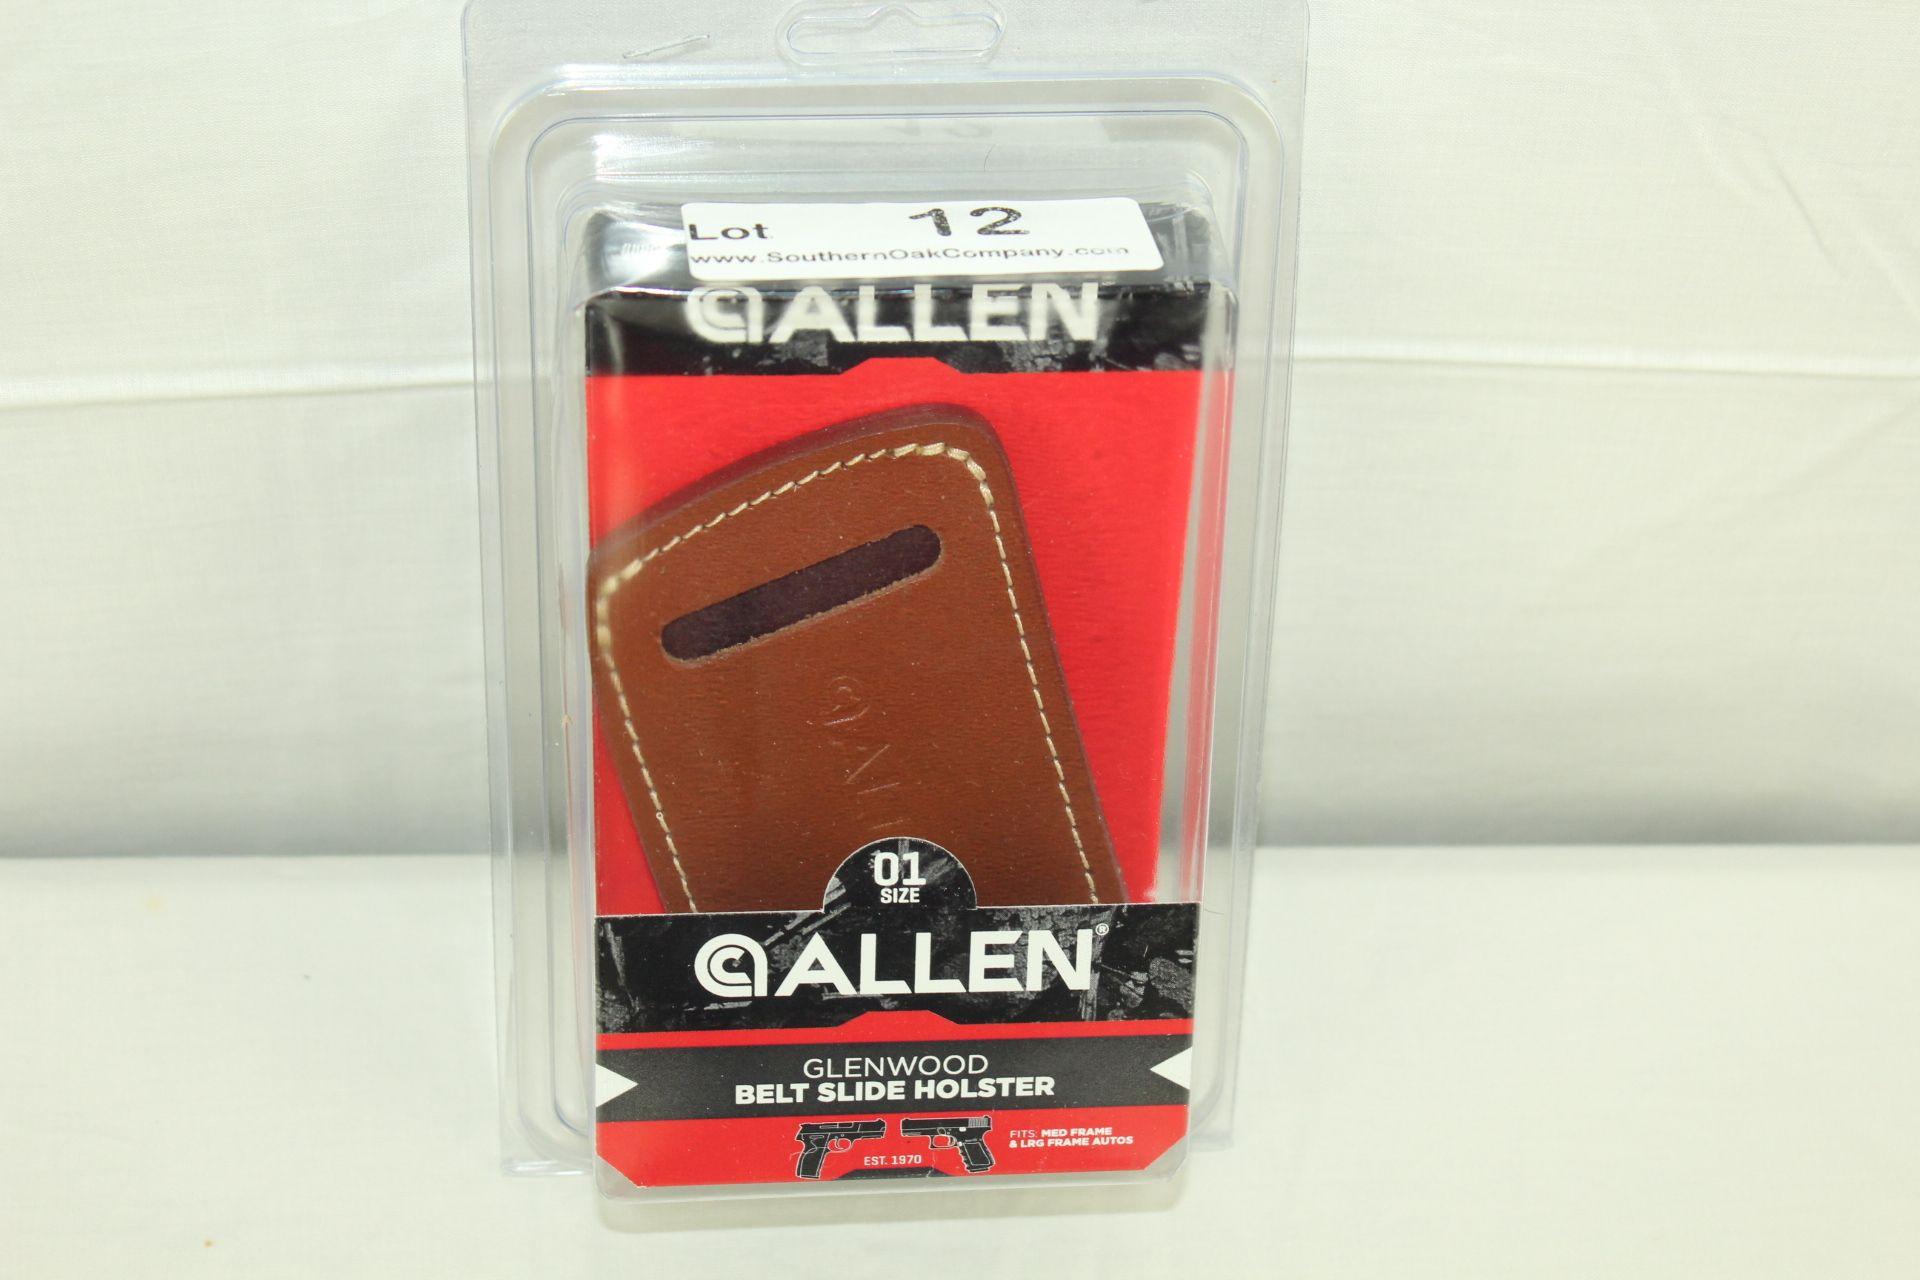 New Allen Size 01 Leather Belt-Slide Holster